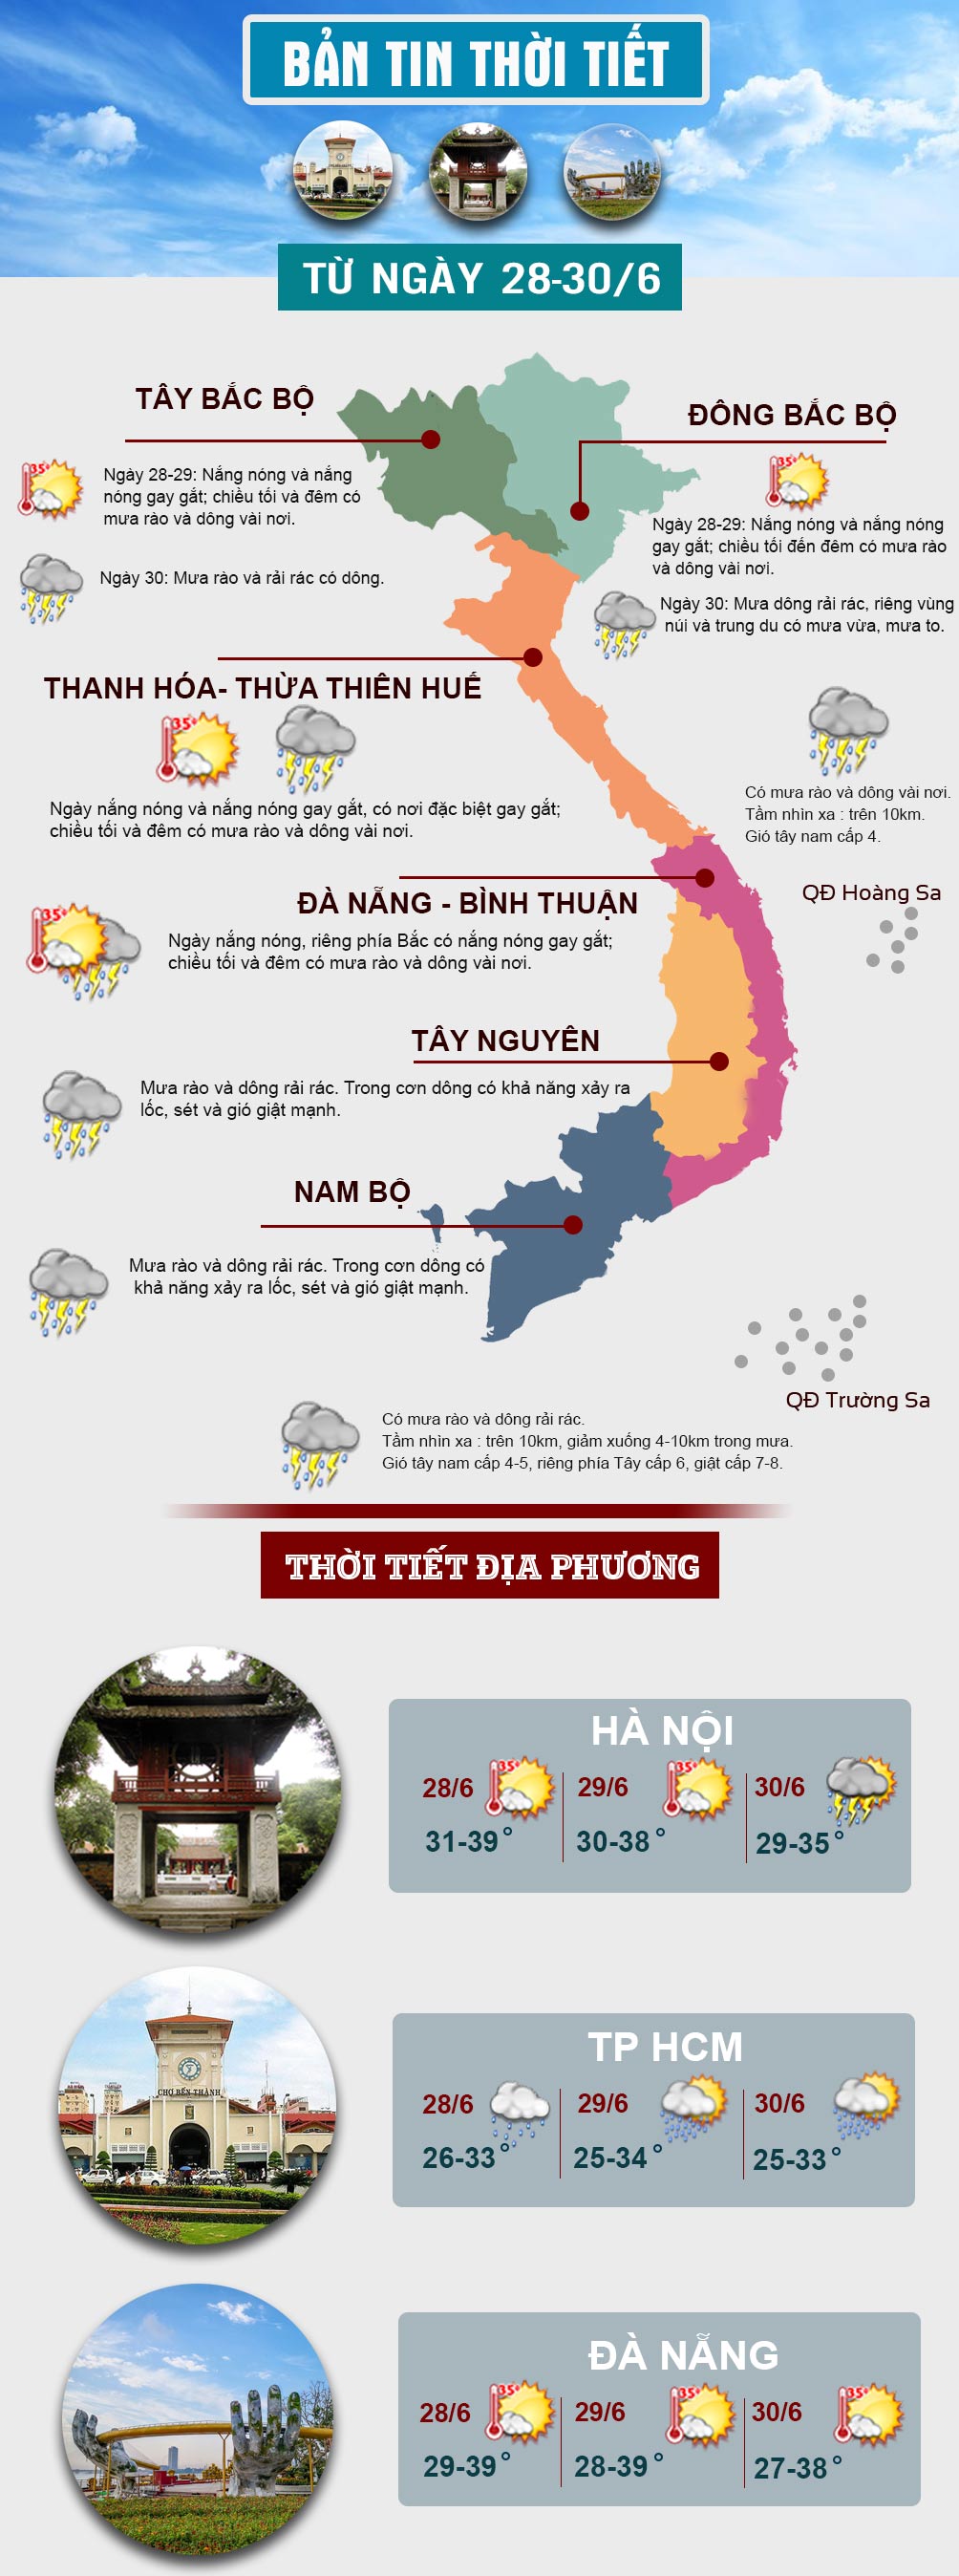 Cuối tuần nắng nóng từ Bắc tới Trung bộ, người dân ở Hà Nội, Đà Nẵng lưu ý điều này - 1